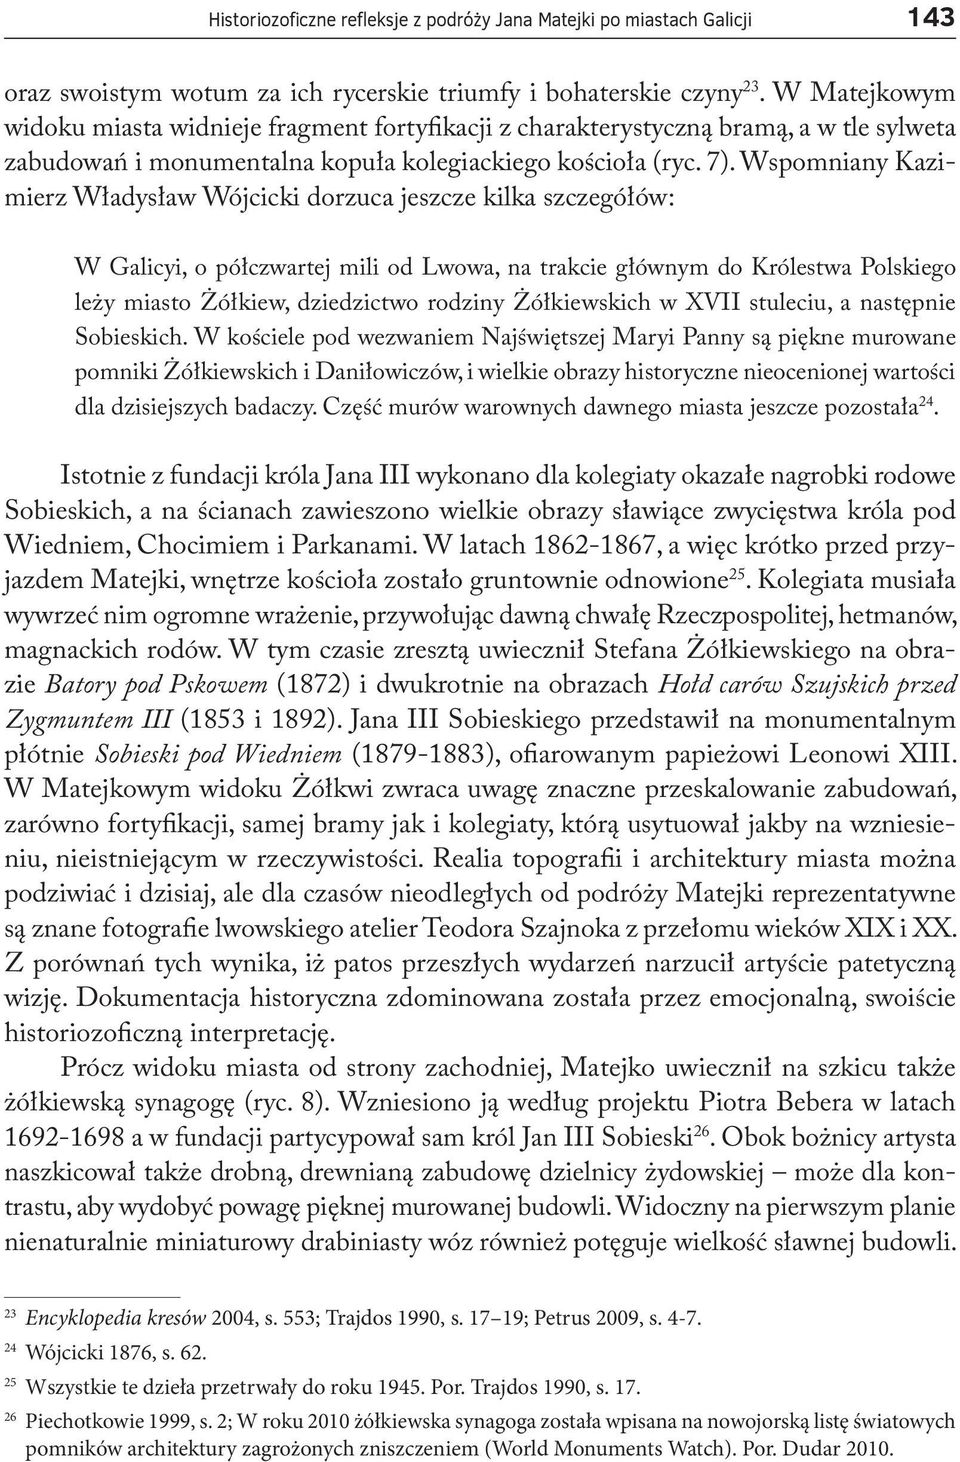 Wspomniany Kazimierz Władysław Wójcicki dorzuca jeszcze kilka szczegółów: W Galicyi, o półczwartej mili od Lwowa, na trakcie głównym do Królestwa Polskiego leży miasto Żółkiew, dziedzictwo rodziny